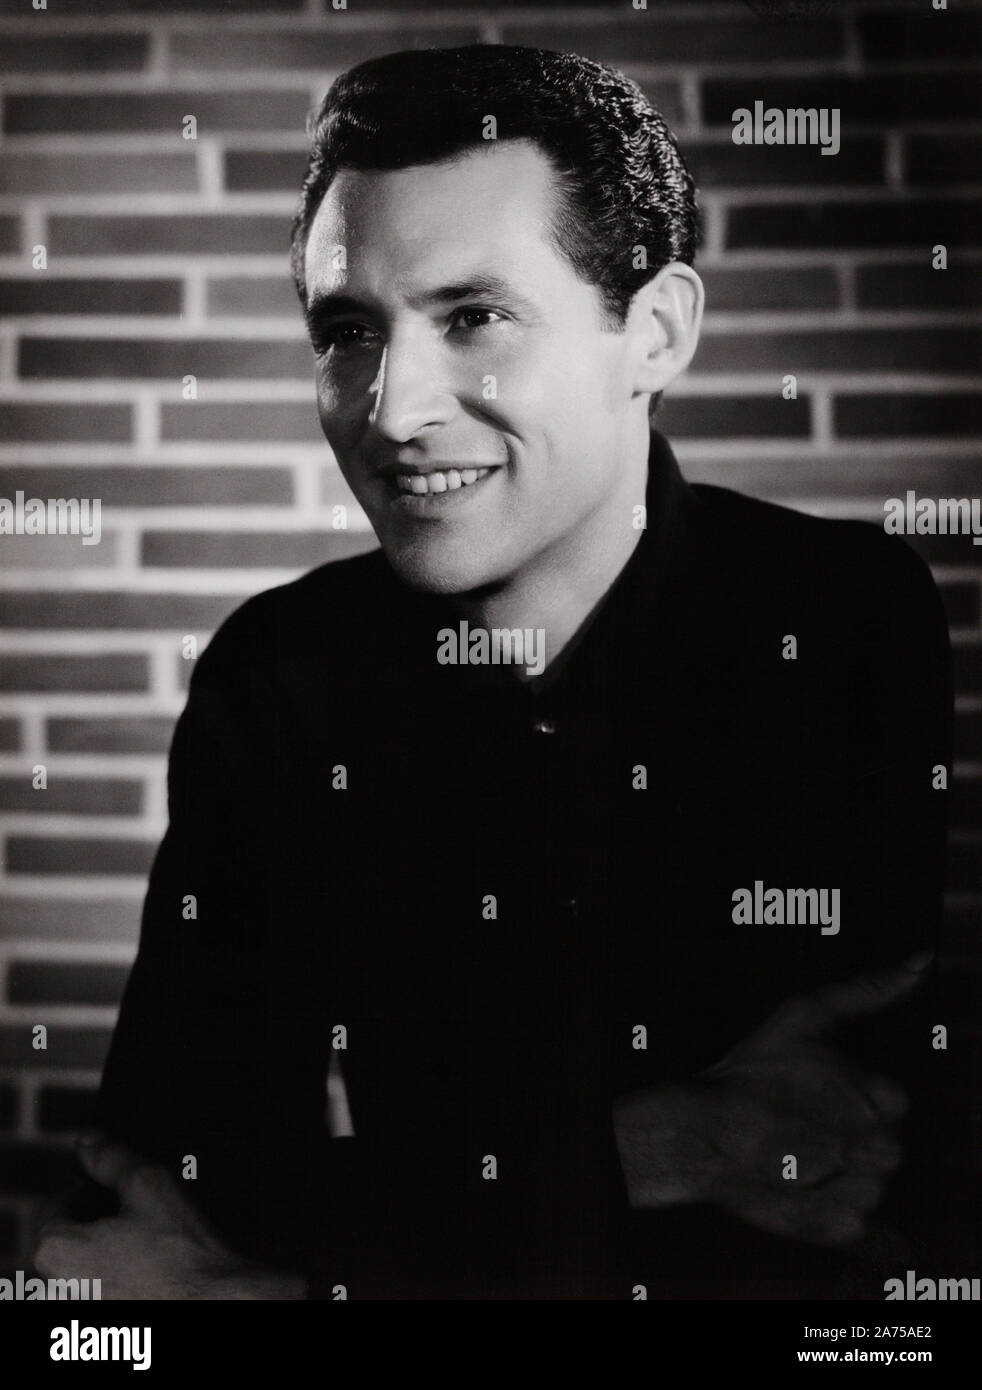 Silvio Francesco, italienischer Unterhaltungskünstler, Deutschland 1950er Jahre. Italienische entertainer Silvio Francesco, Deutschland 1950. Stockfoto